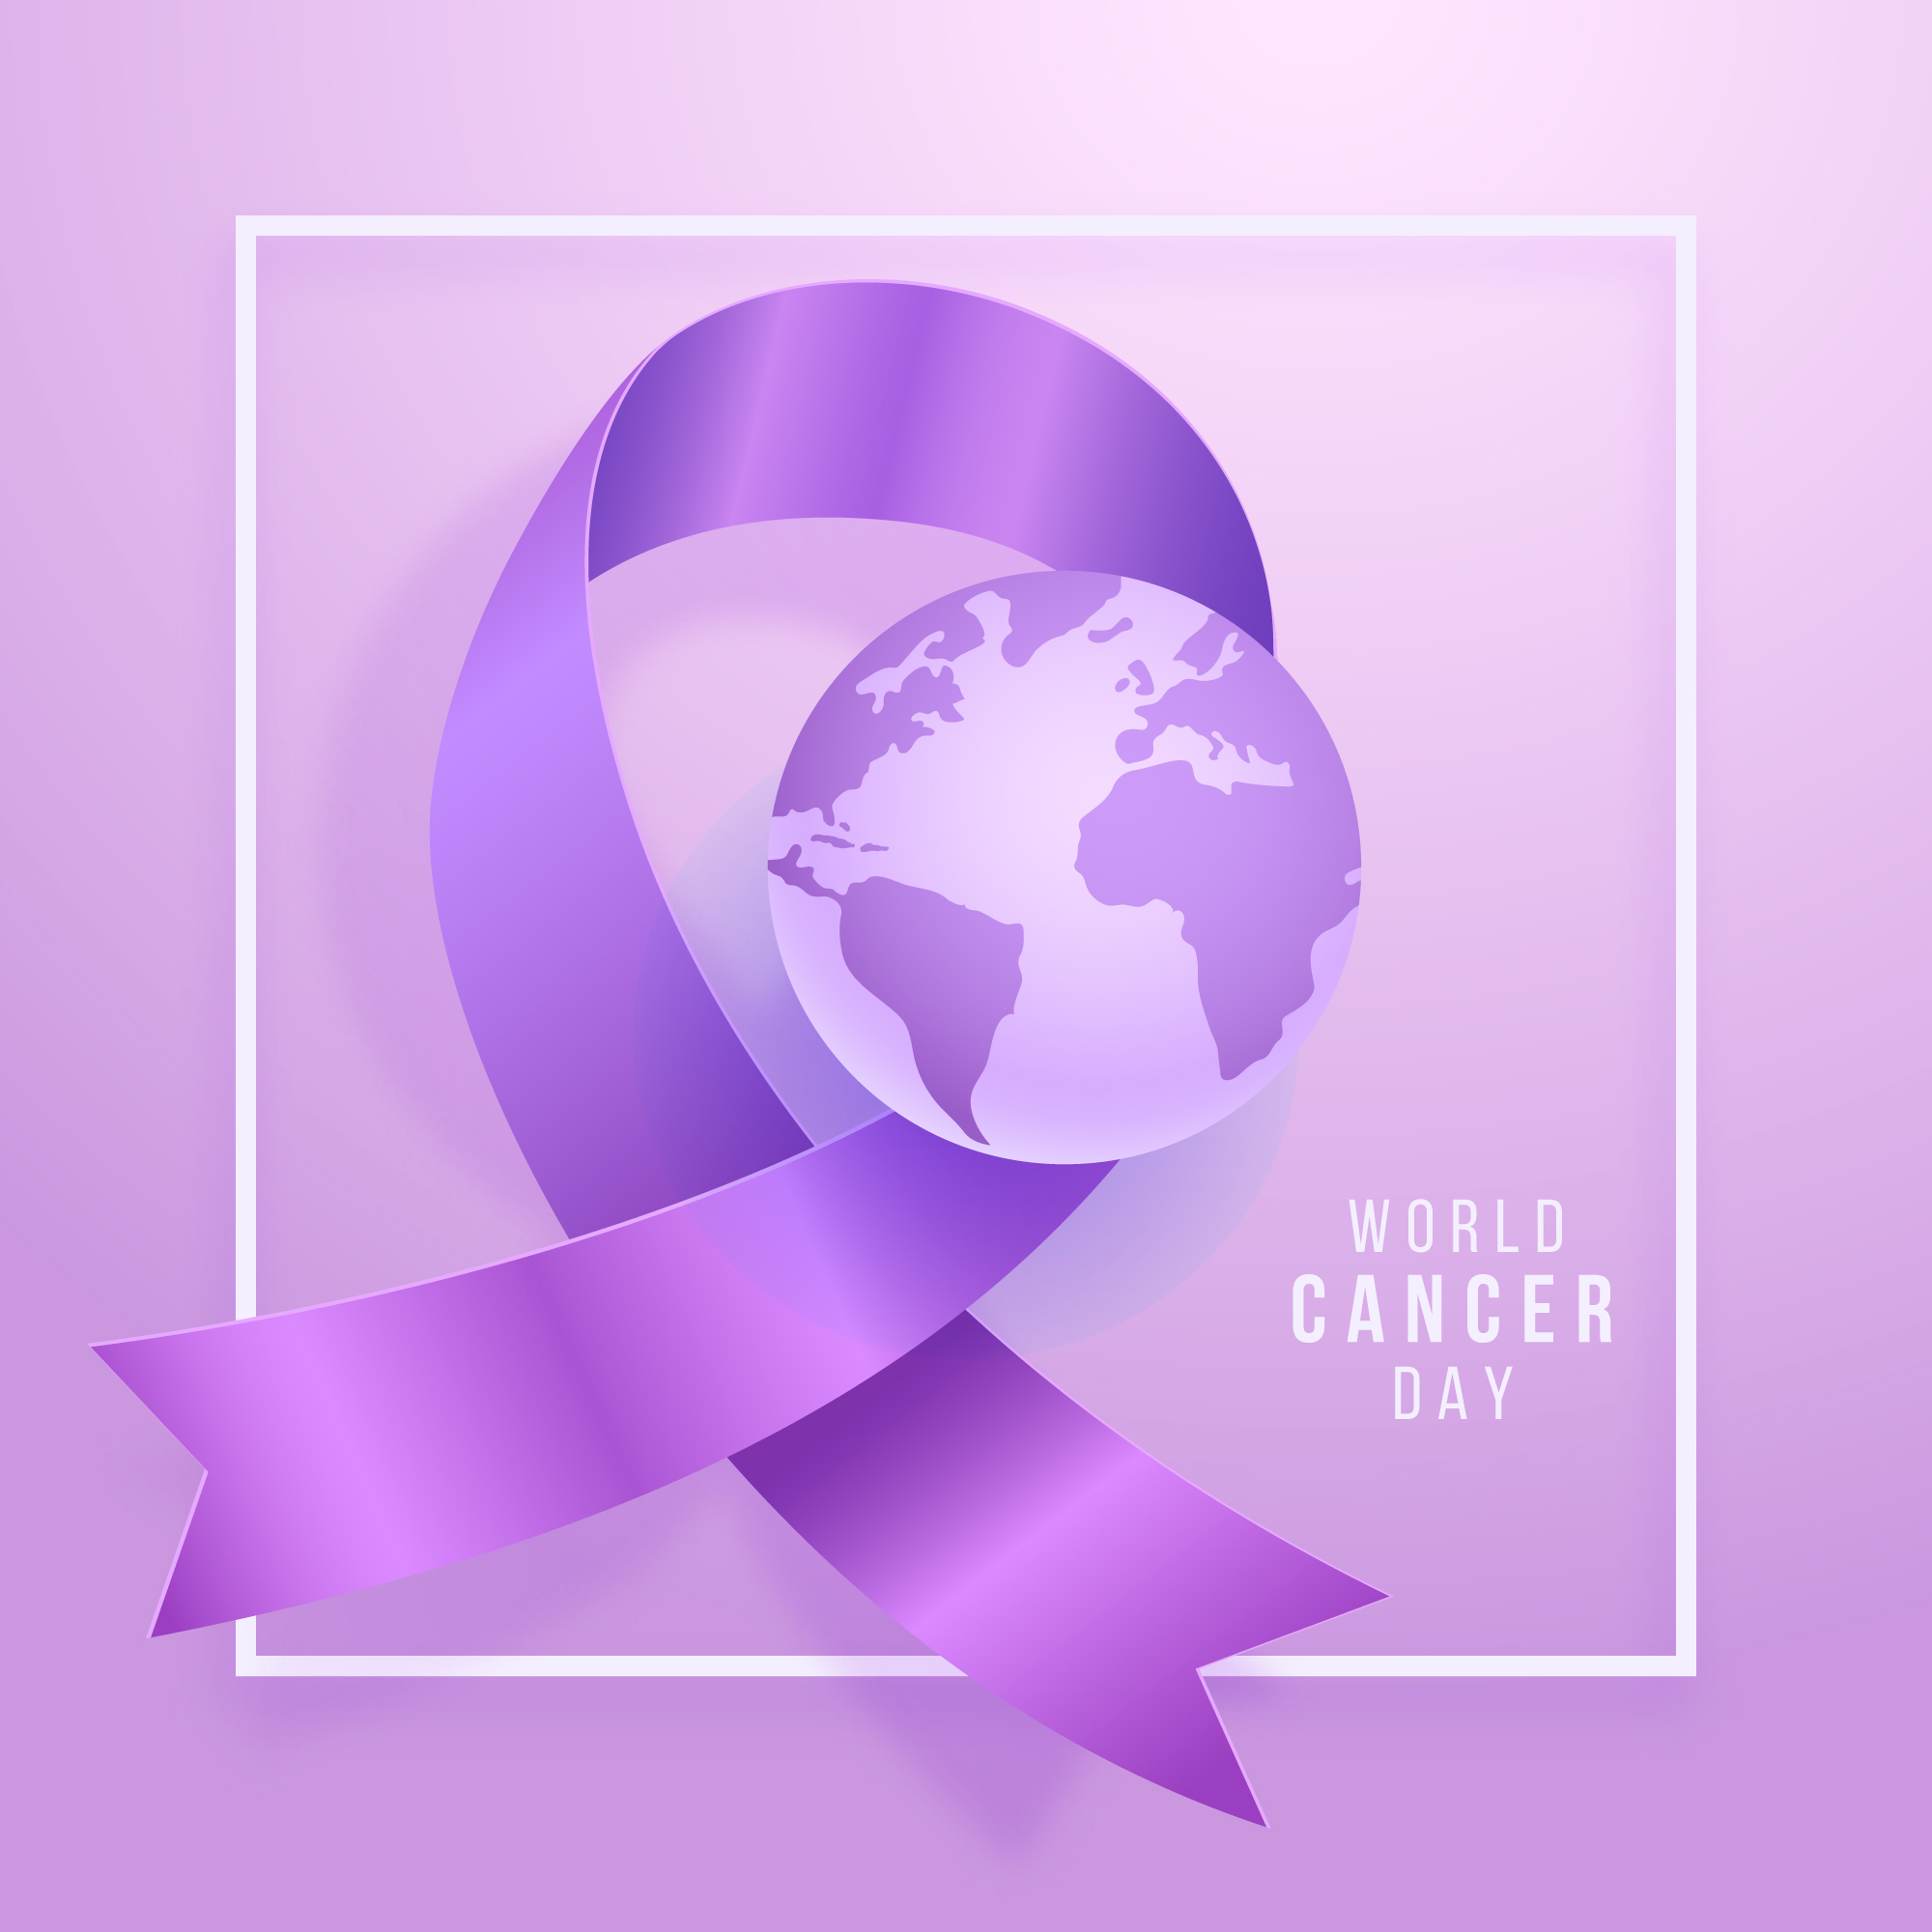 วันมะเร็งโลก (World Cancer Day)